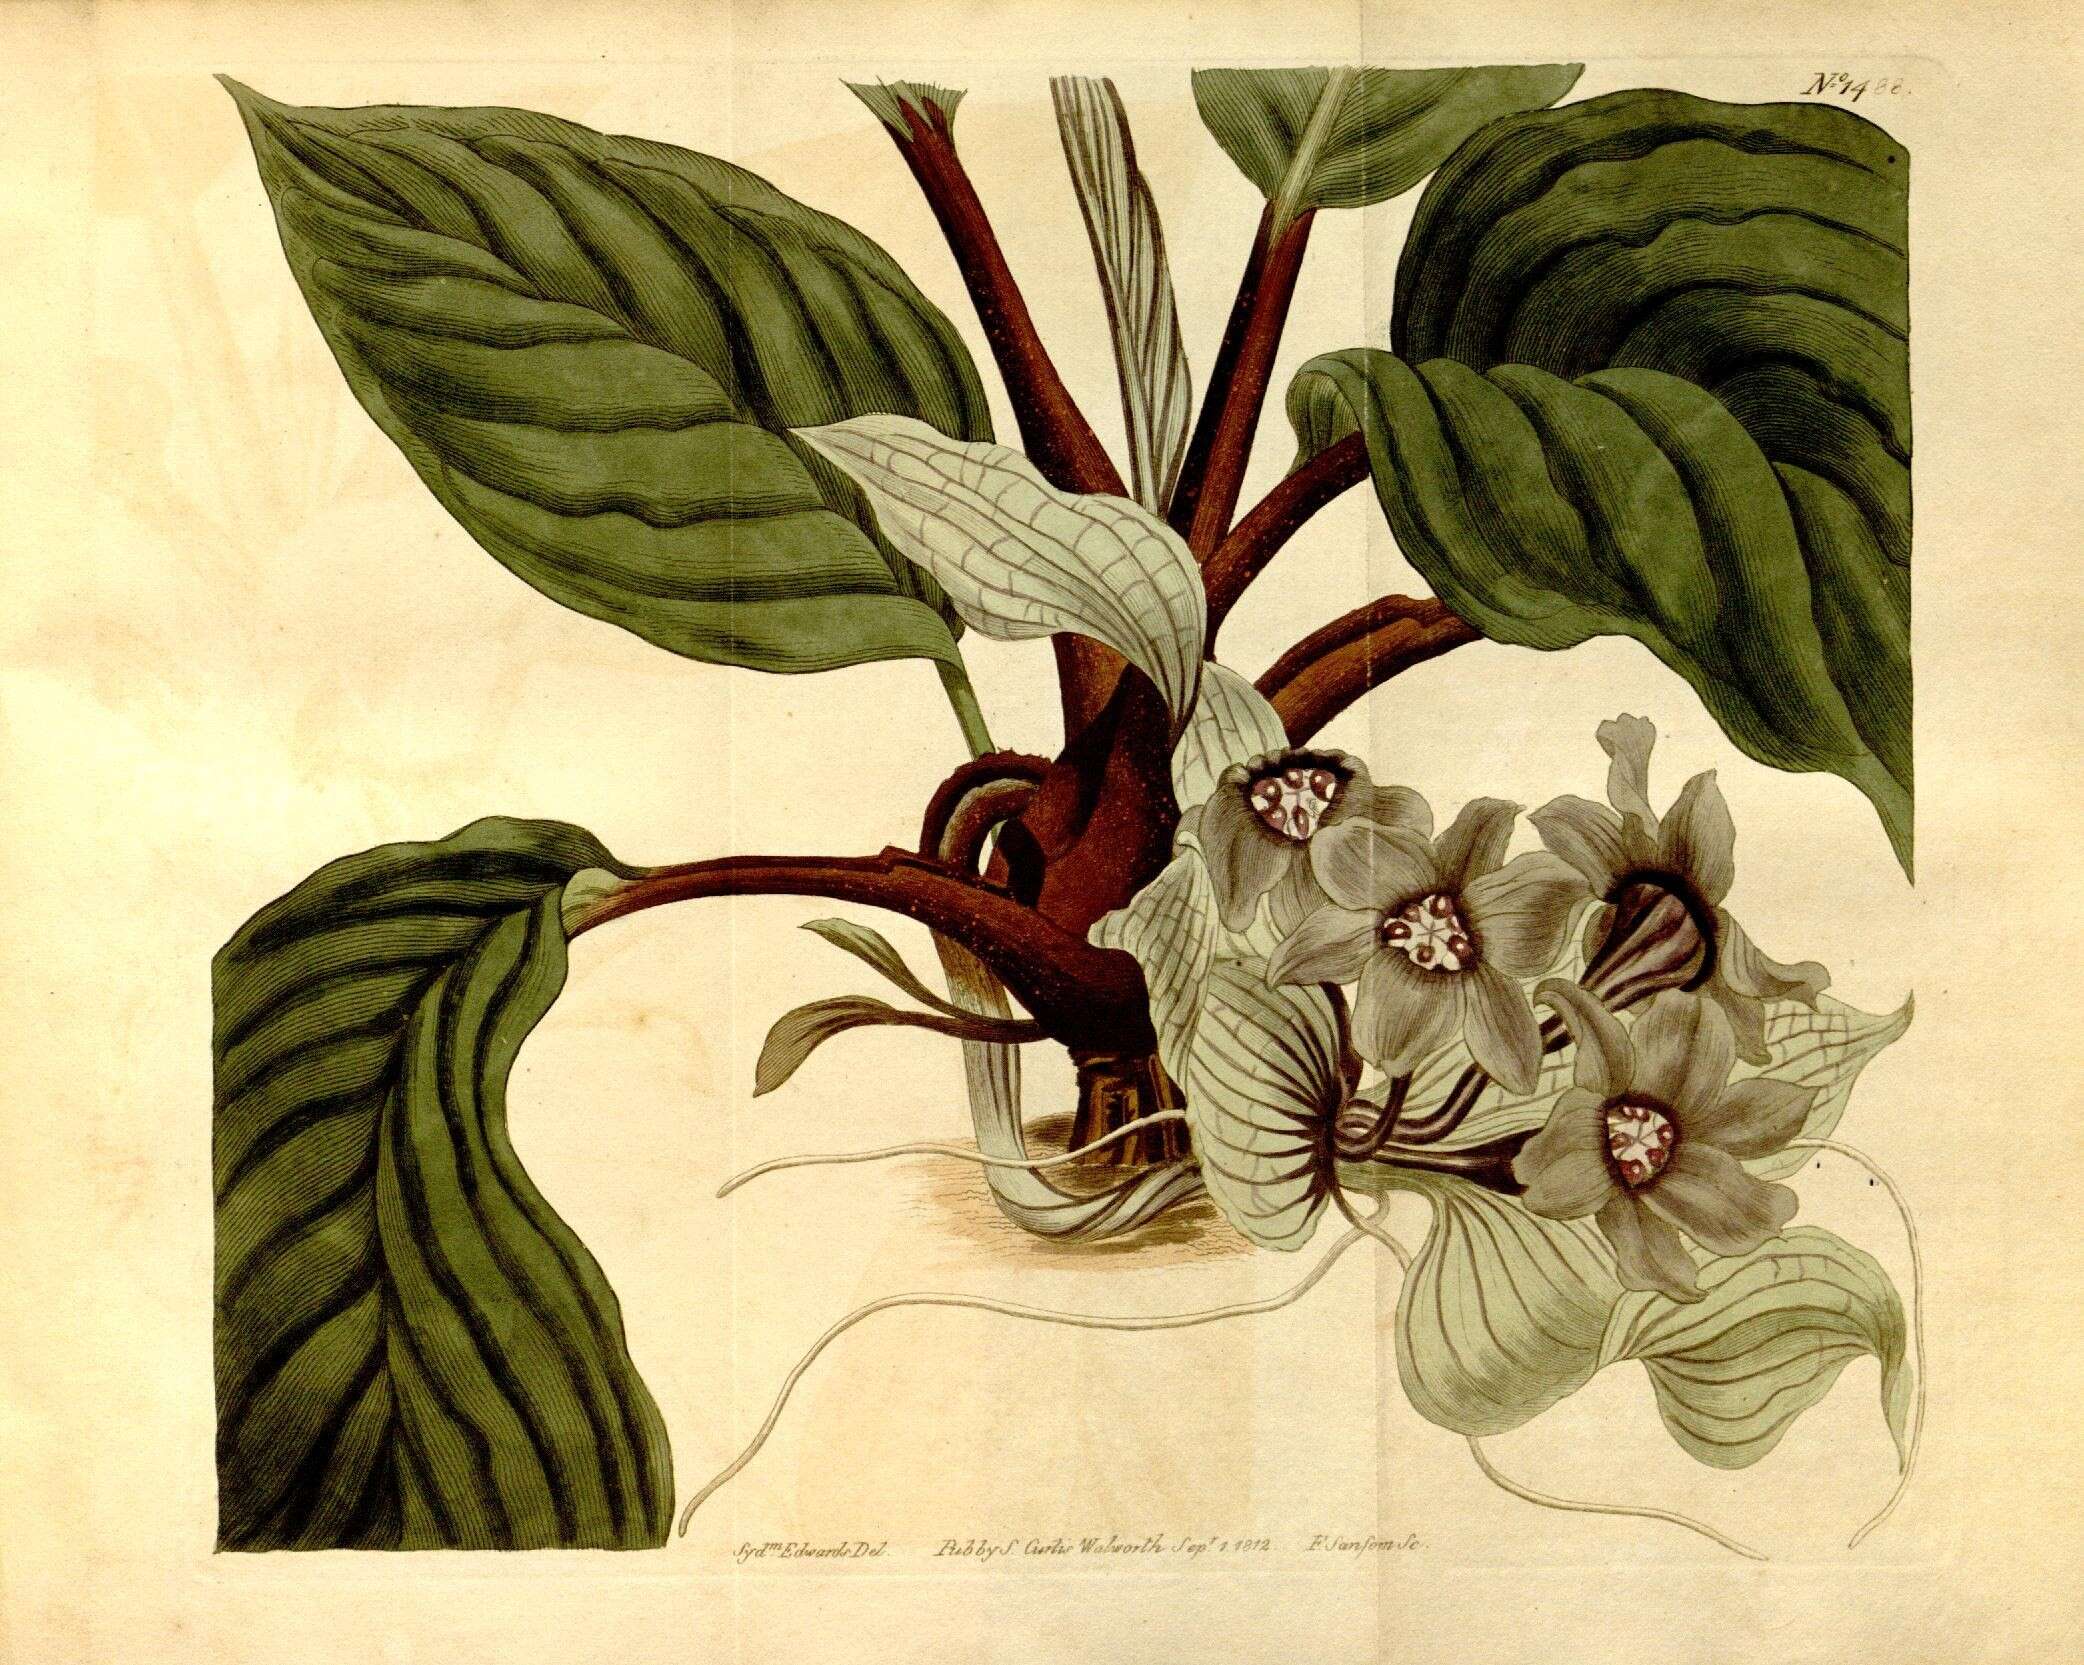 Plancia ëd Dioscoreaceae